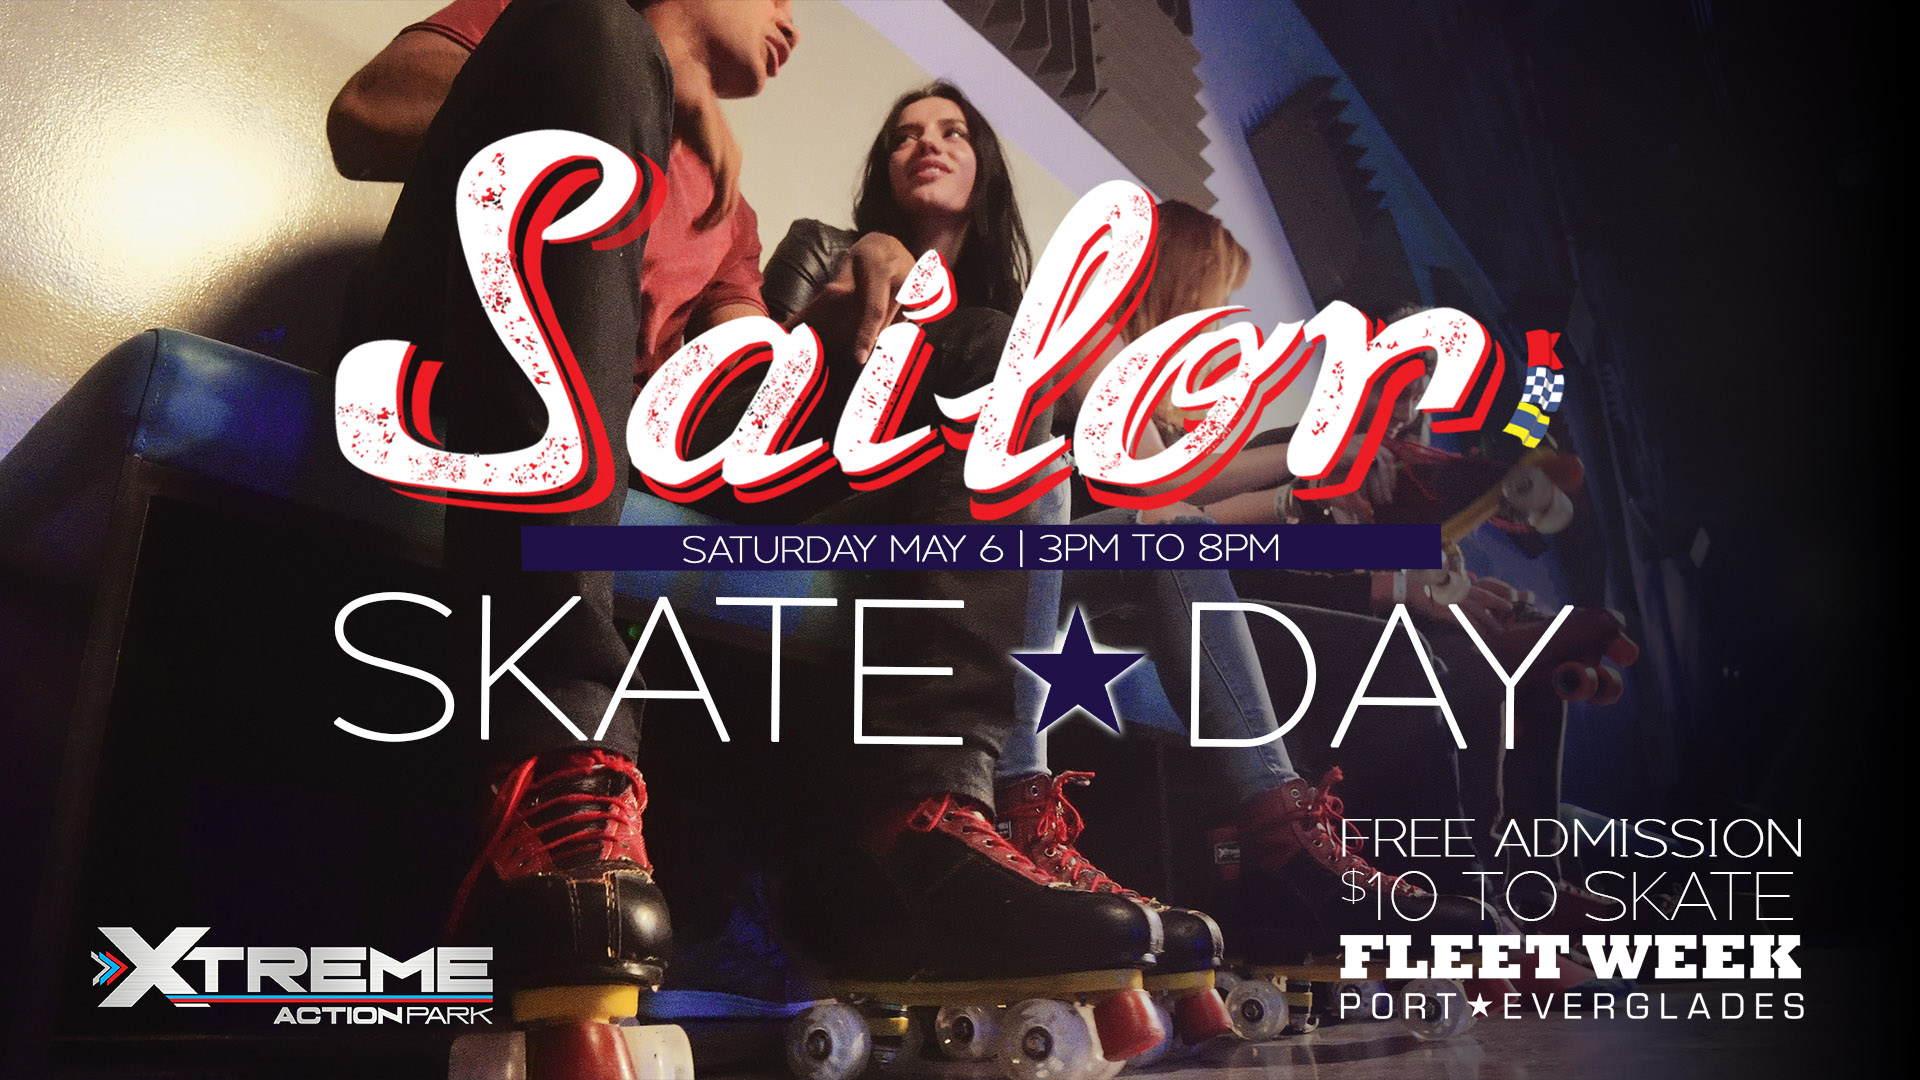 Fleet Week Sailor Skate